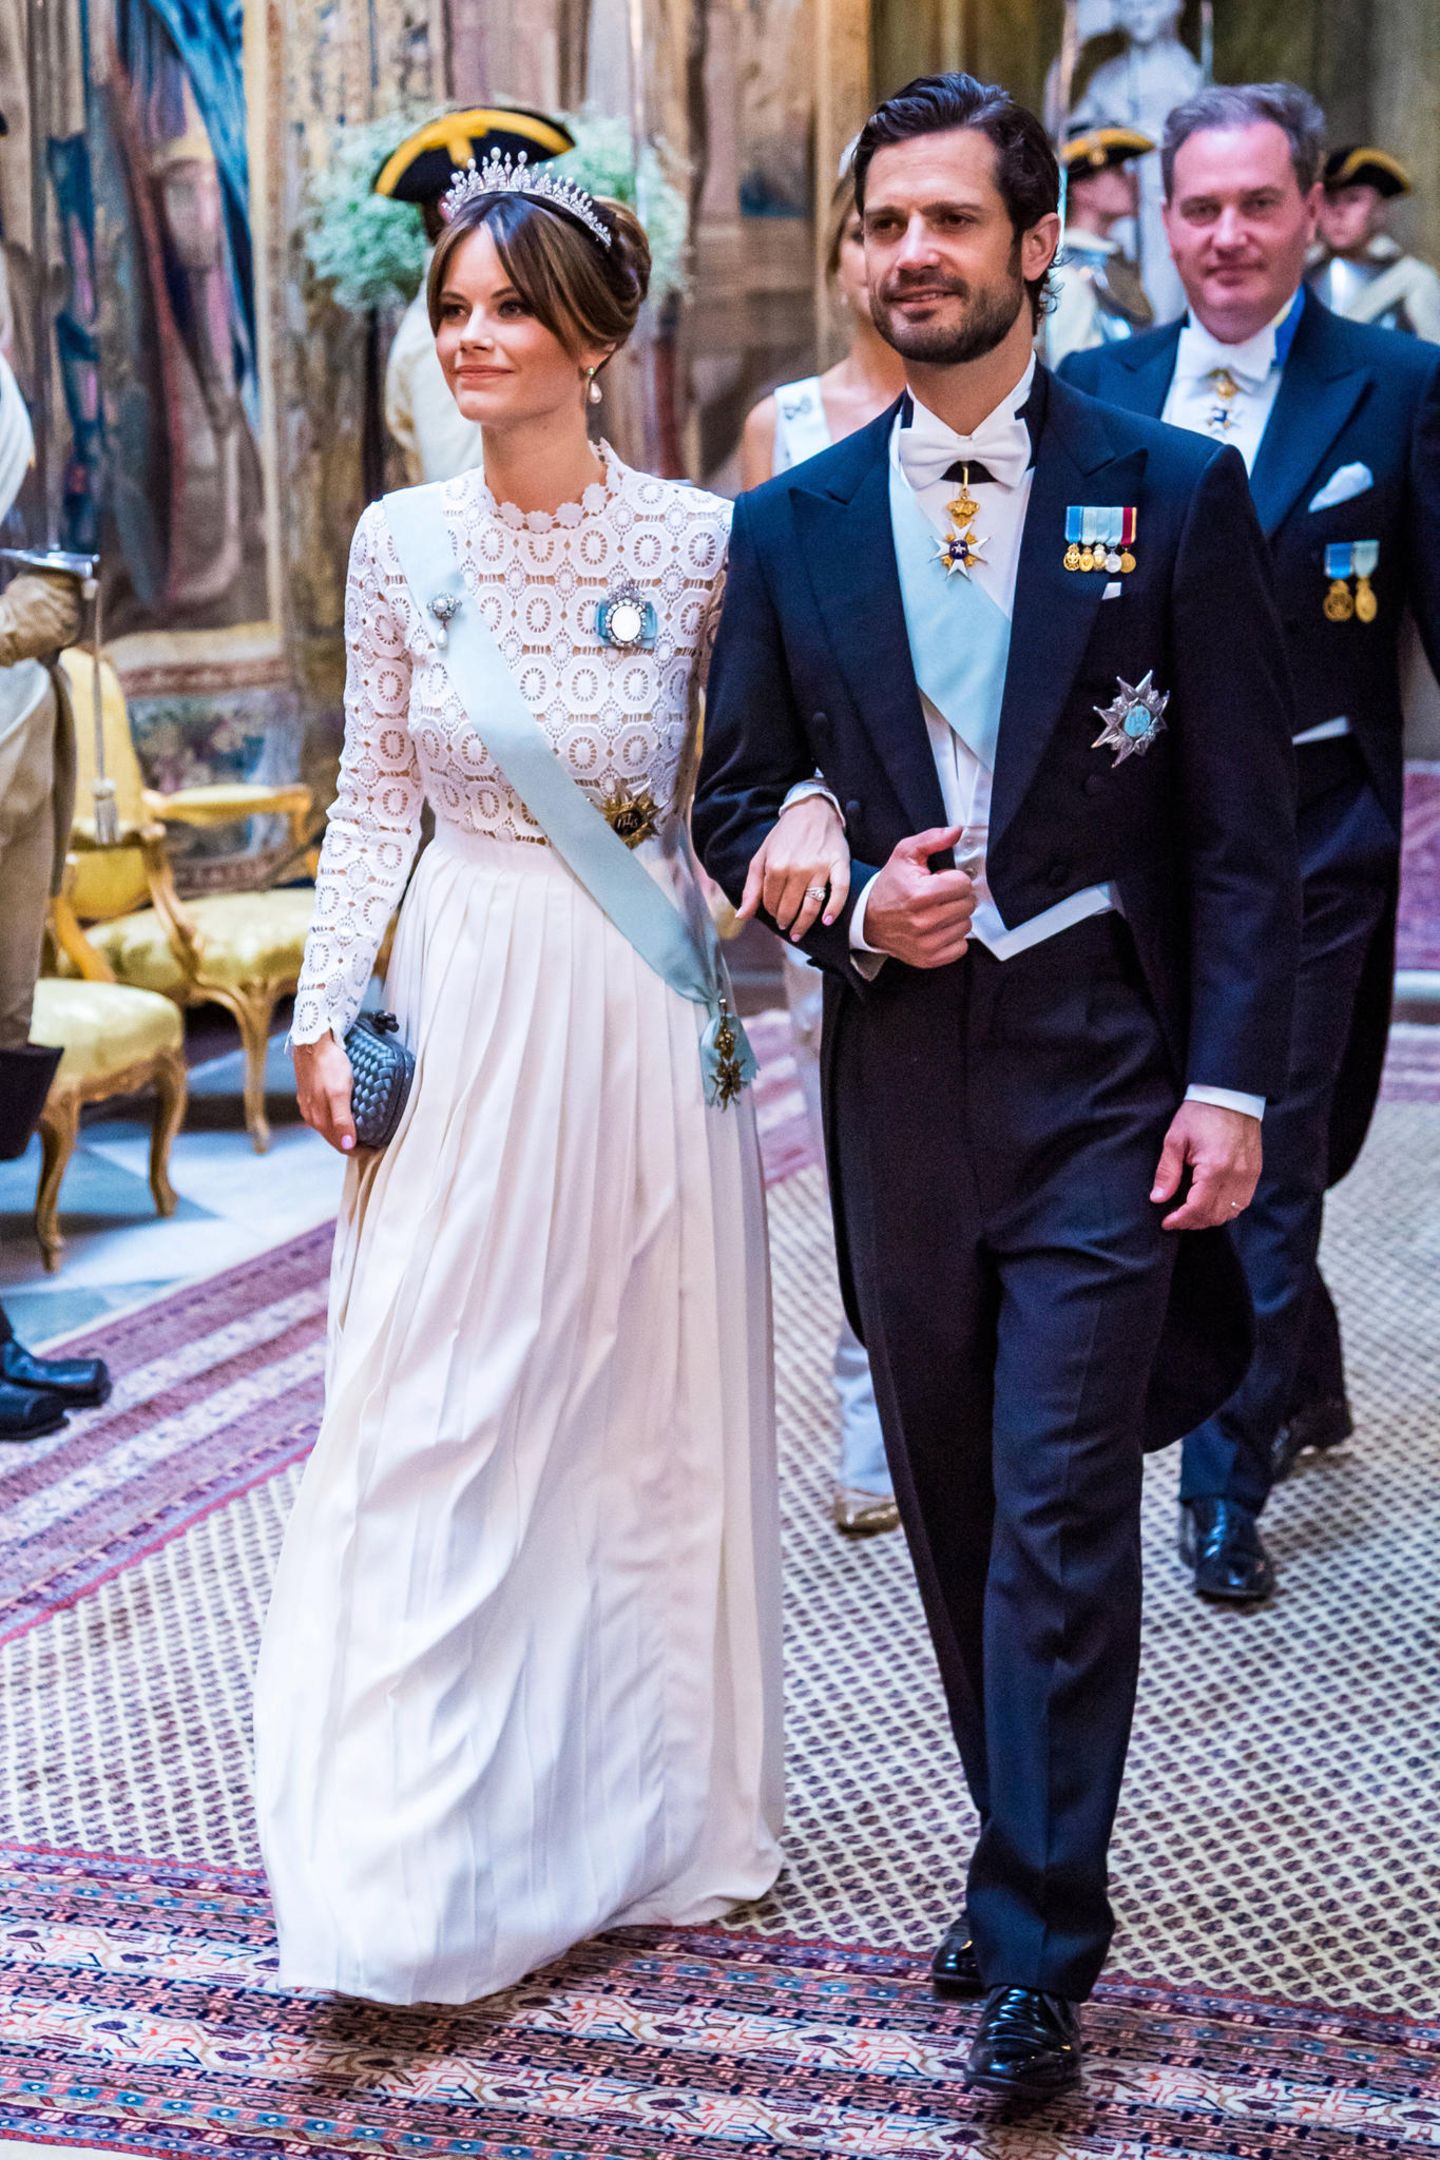 Wenige Monate zuvor im Nachbarland: Zum Staatsbankett im königlichen Palast in Stockholm trägt Prinzessin Sofia das gleiche Kleid. Die knapp 400 Euro teure Robe von Self Portrait ist eine Kreation aus Spitze und Seidenkrepp – perfekt für diesen offiziellen Anlass. Das wusste eine royale Fashion-Queen allerdings schon vor Jahren...